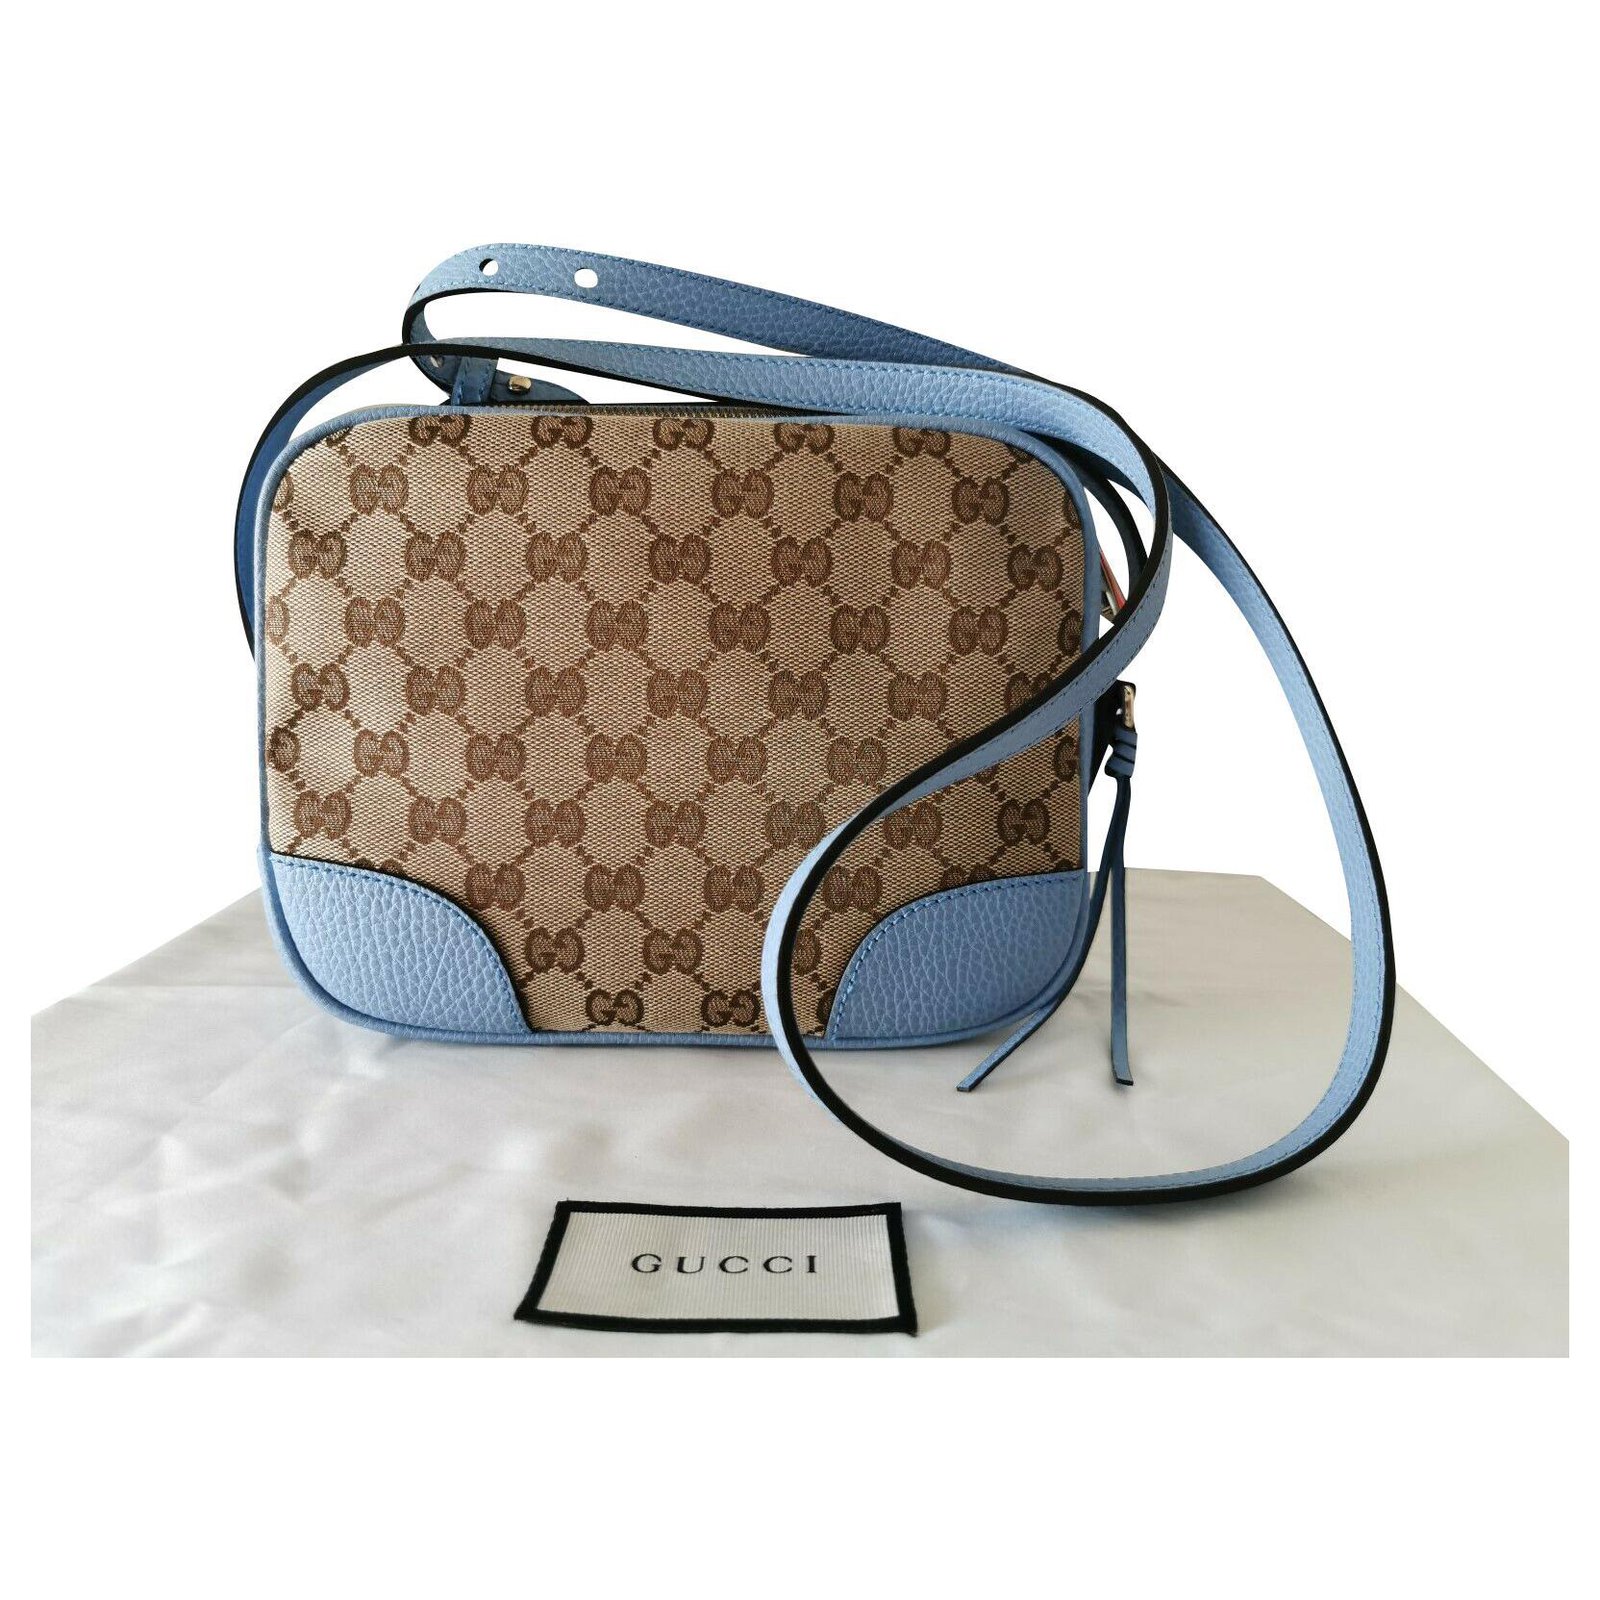 Gucci GUCCI canvas Bag cross-body 